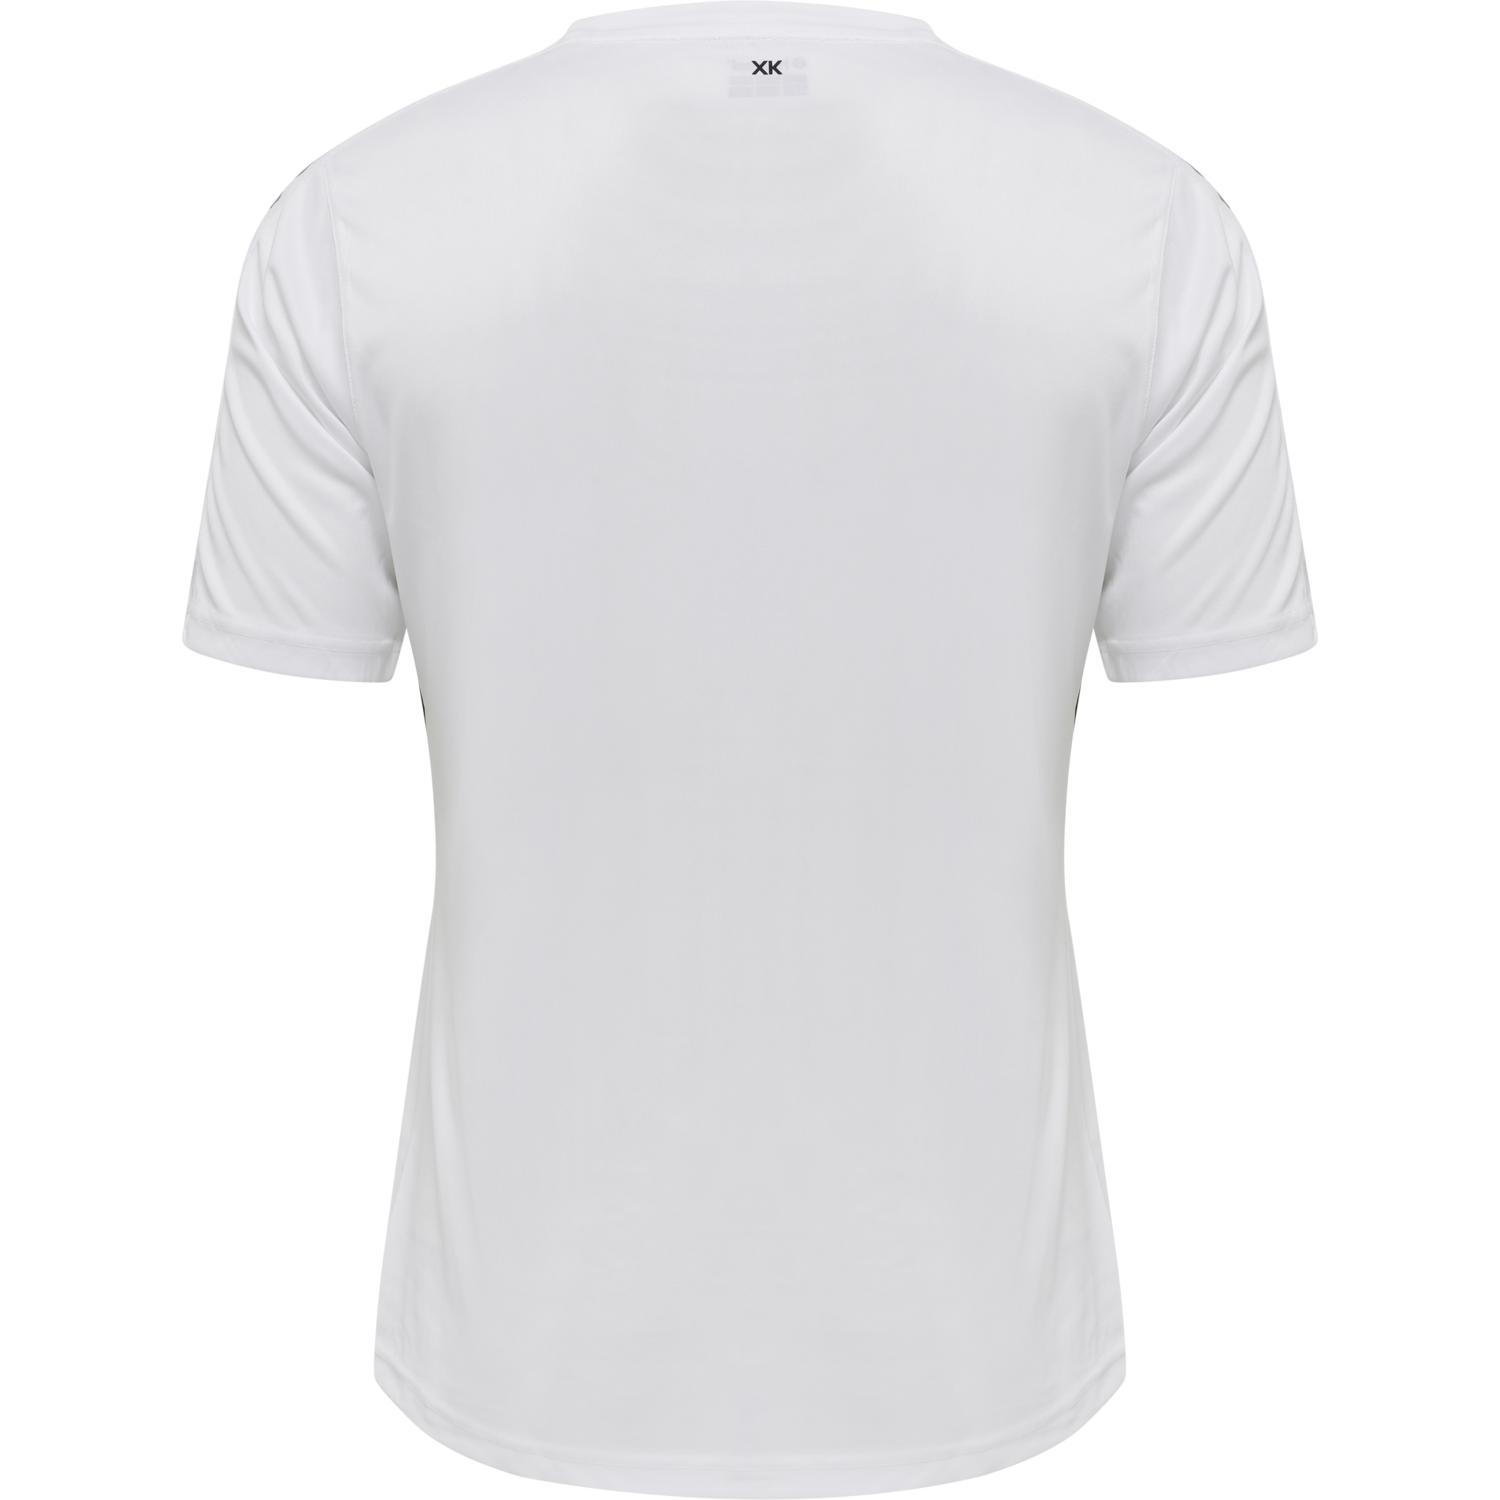 Details about   Hummel Football Soccer Kids Sports Training Striped Short Sleeve SS Jersey Shirt 